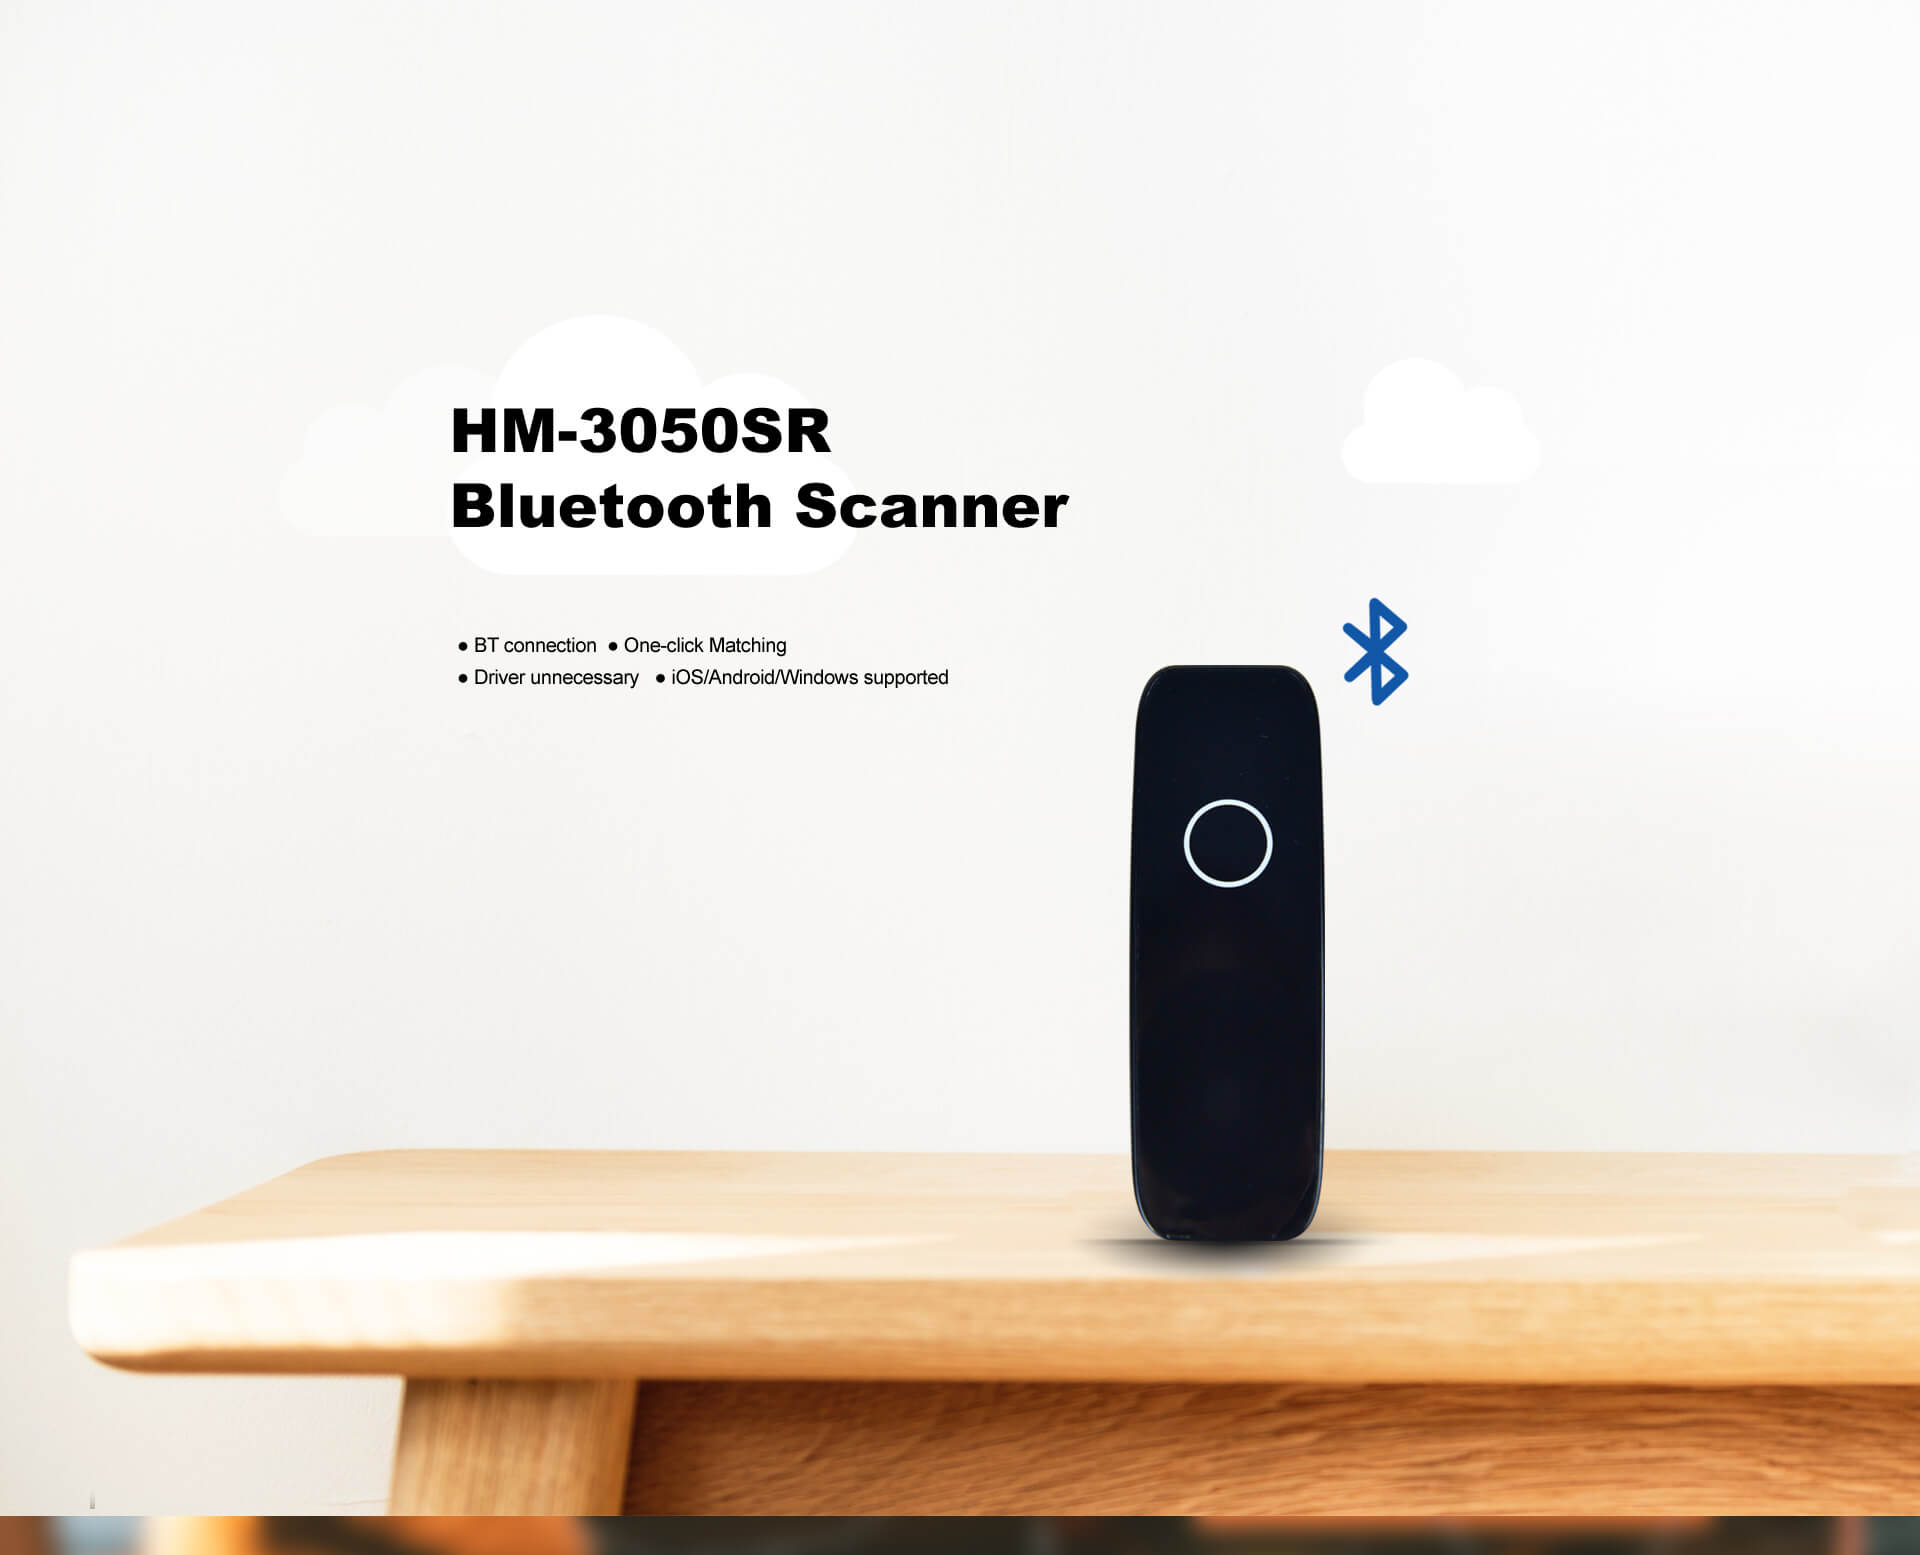 iDPRT Bluetooth Barcode Scanner HM-3050SR (1).jpg